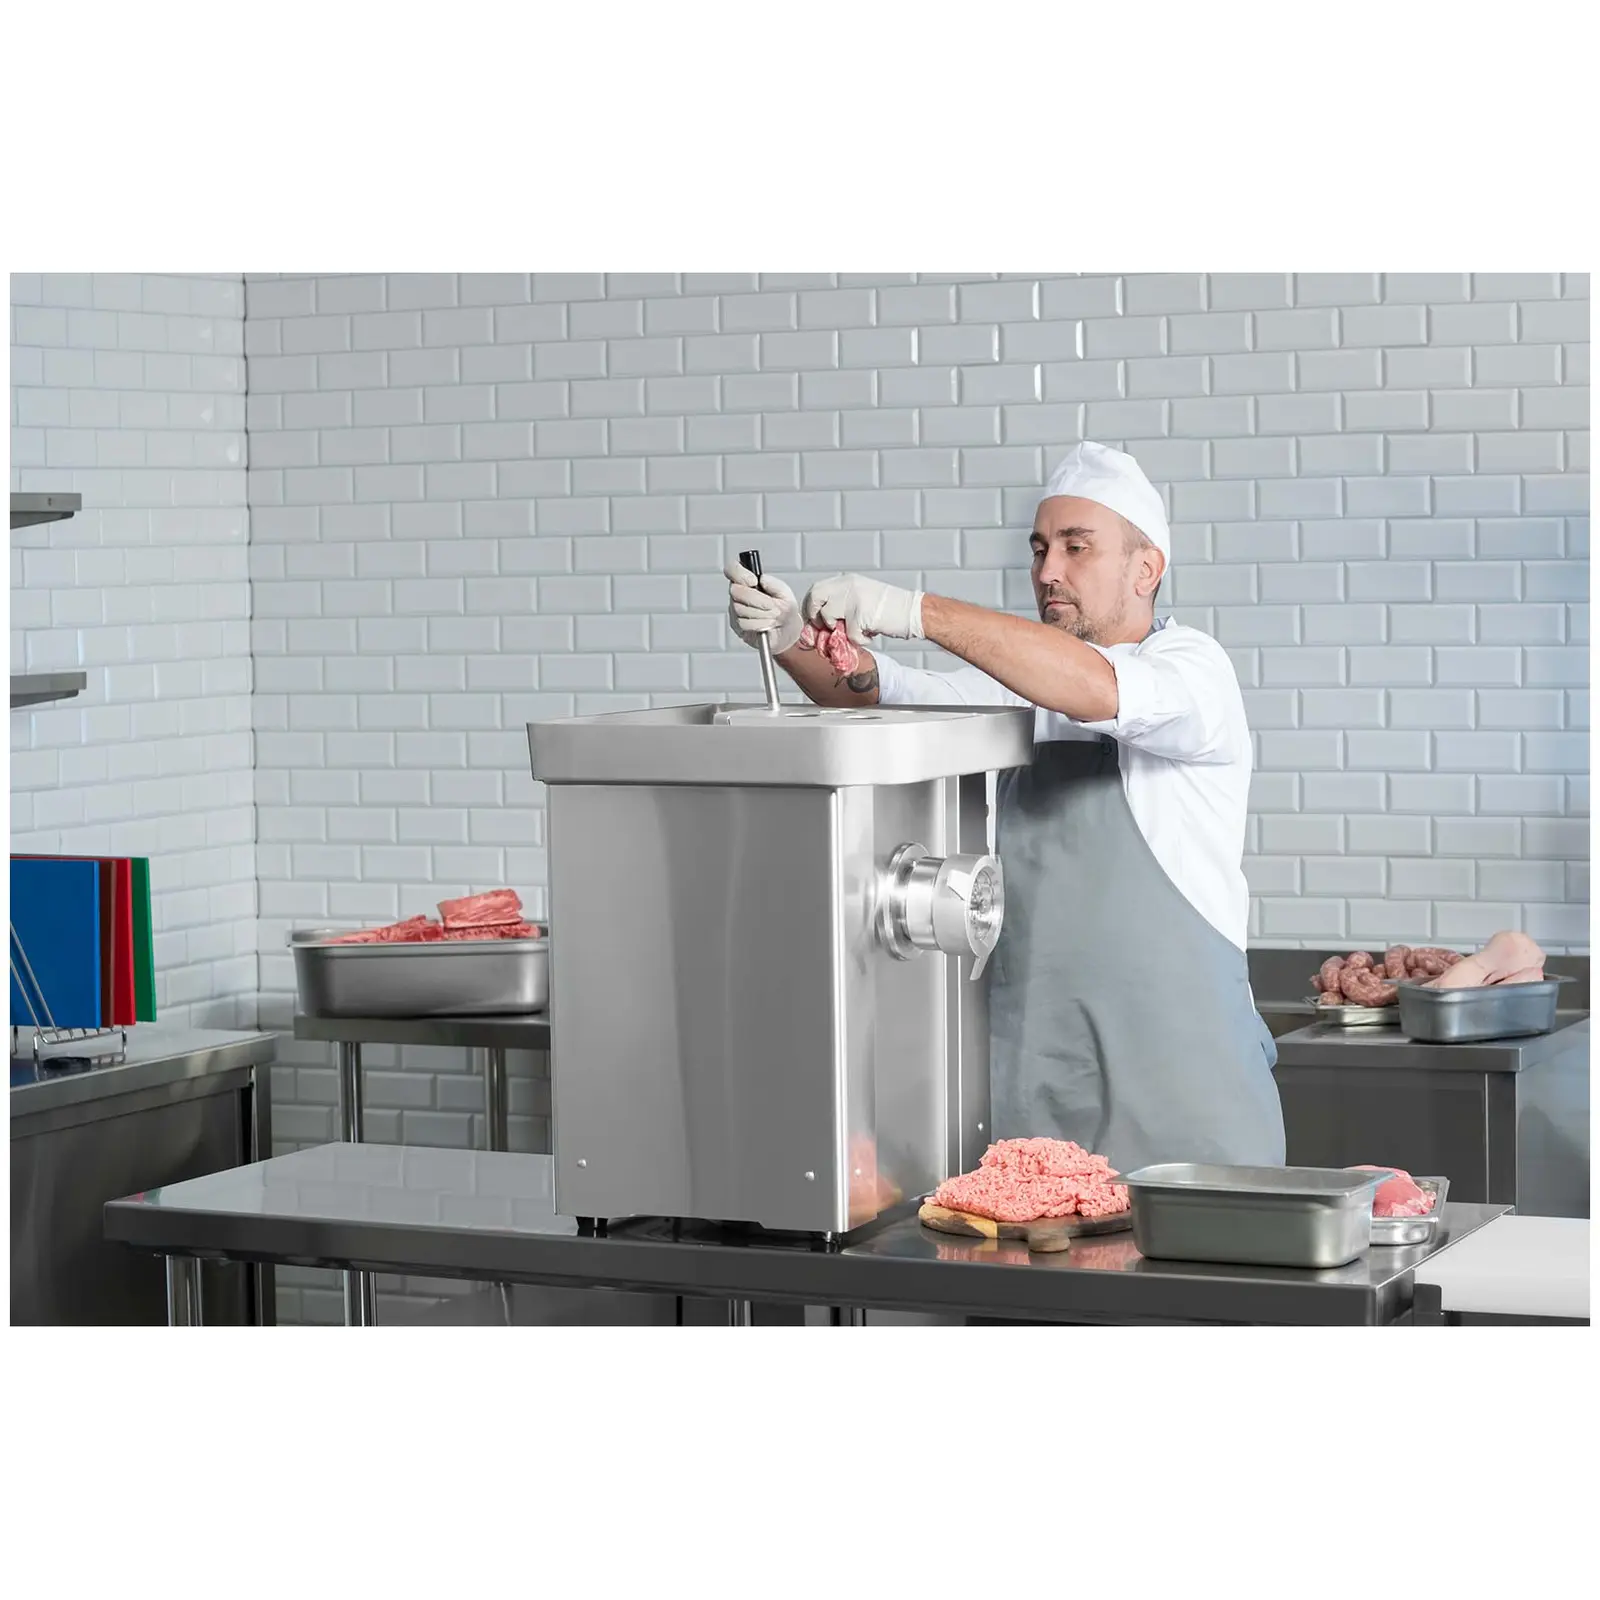 Picadora de carne - 800 kg/g - industrial